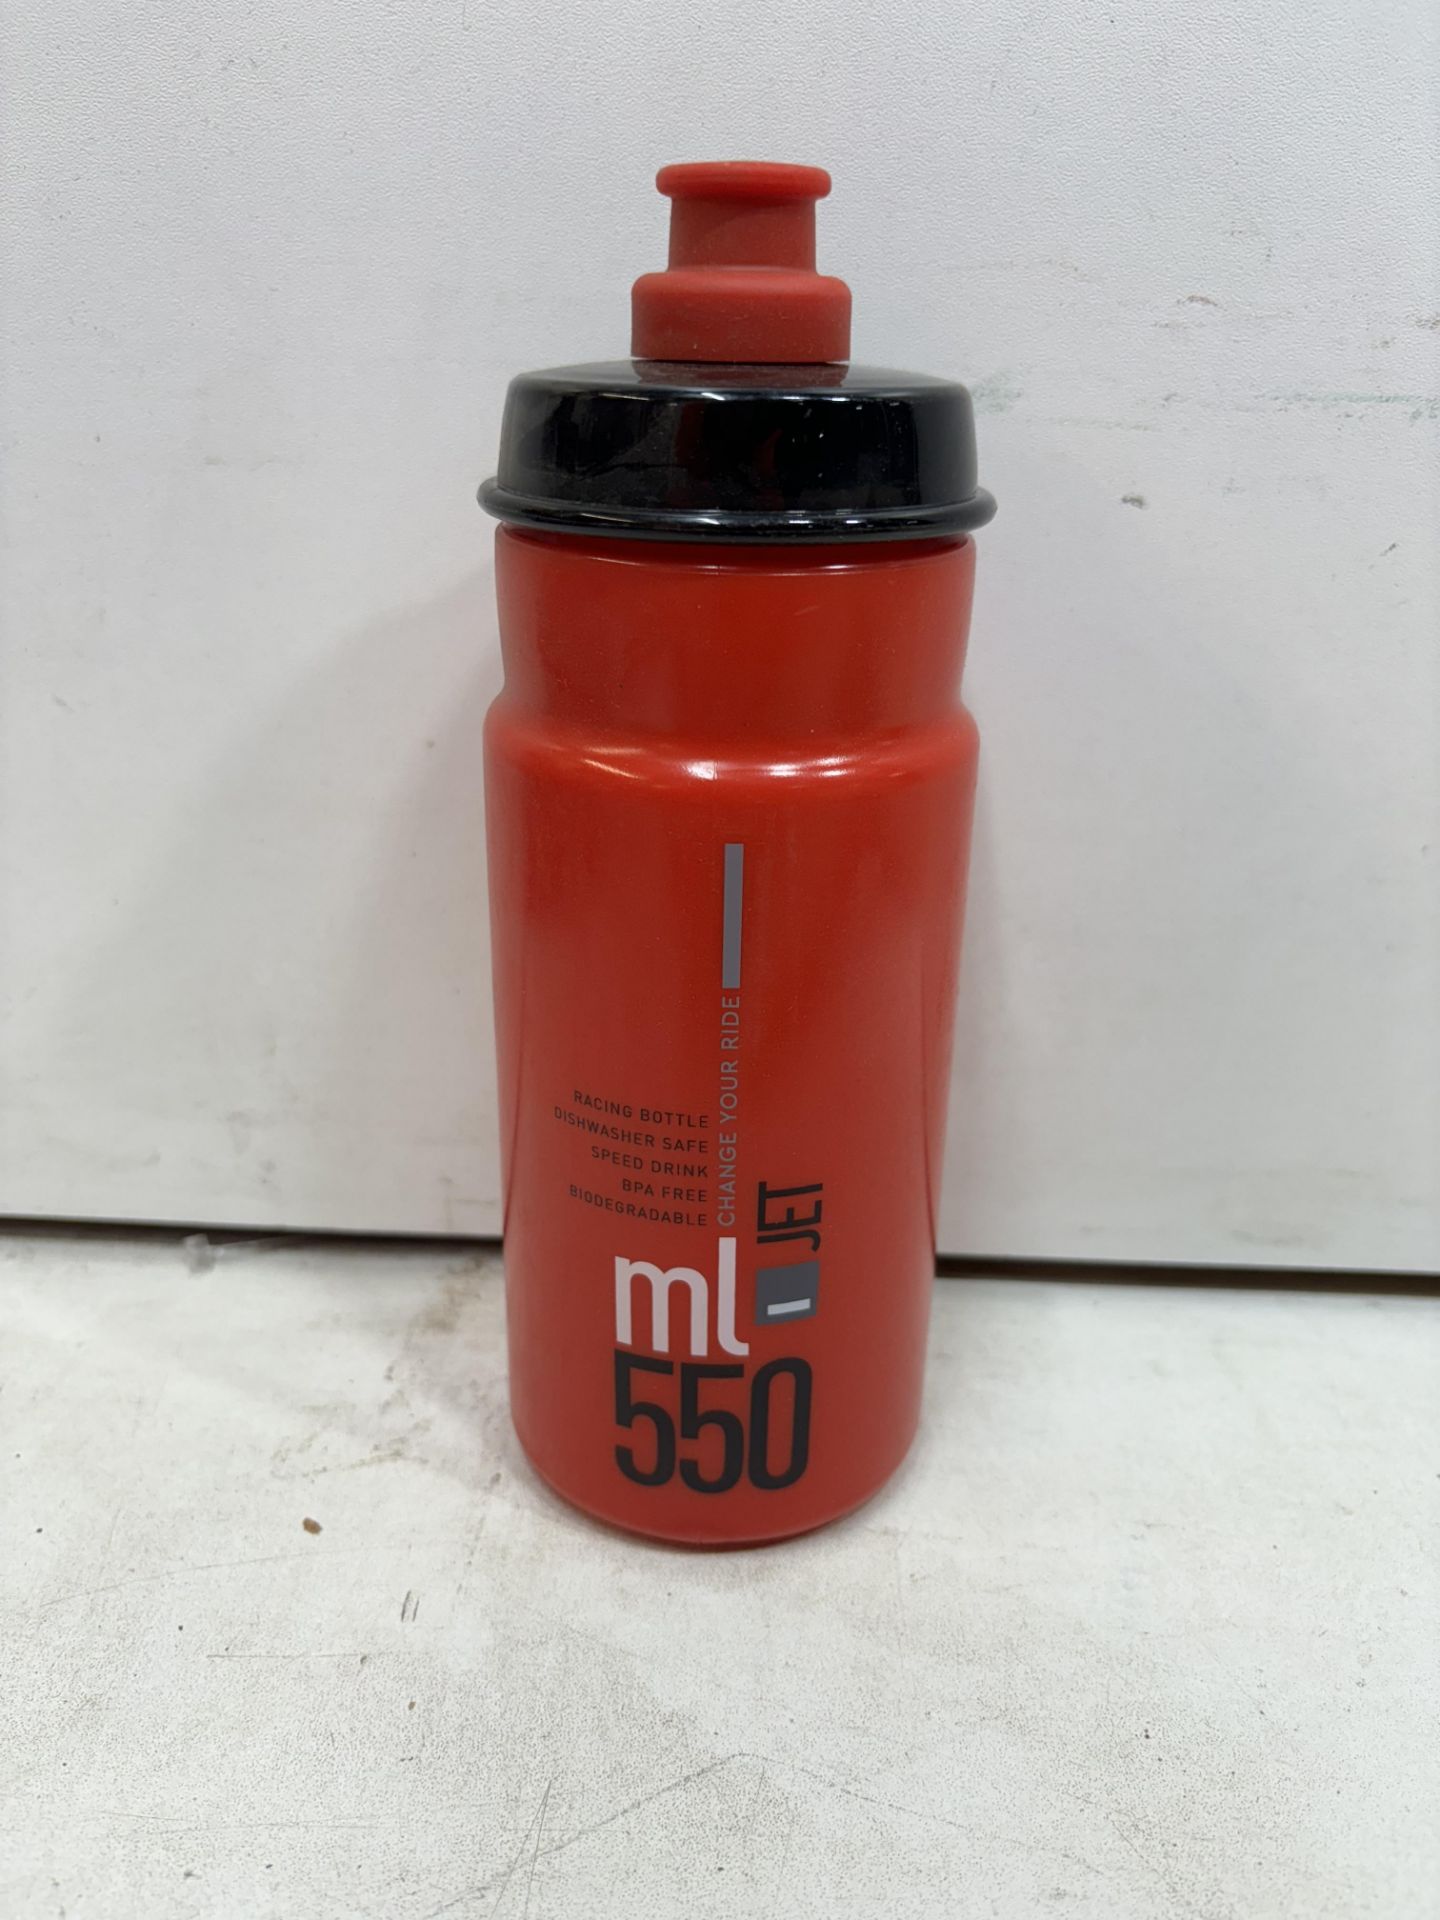 20 x Elite Jet Water Bottles - 550ml, Red - Image 2 of 3